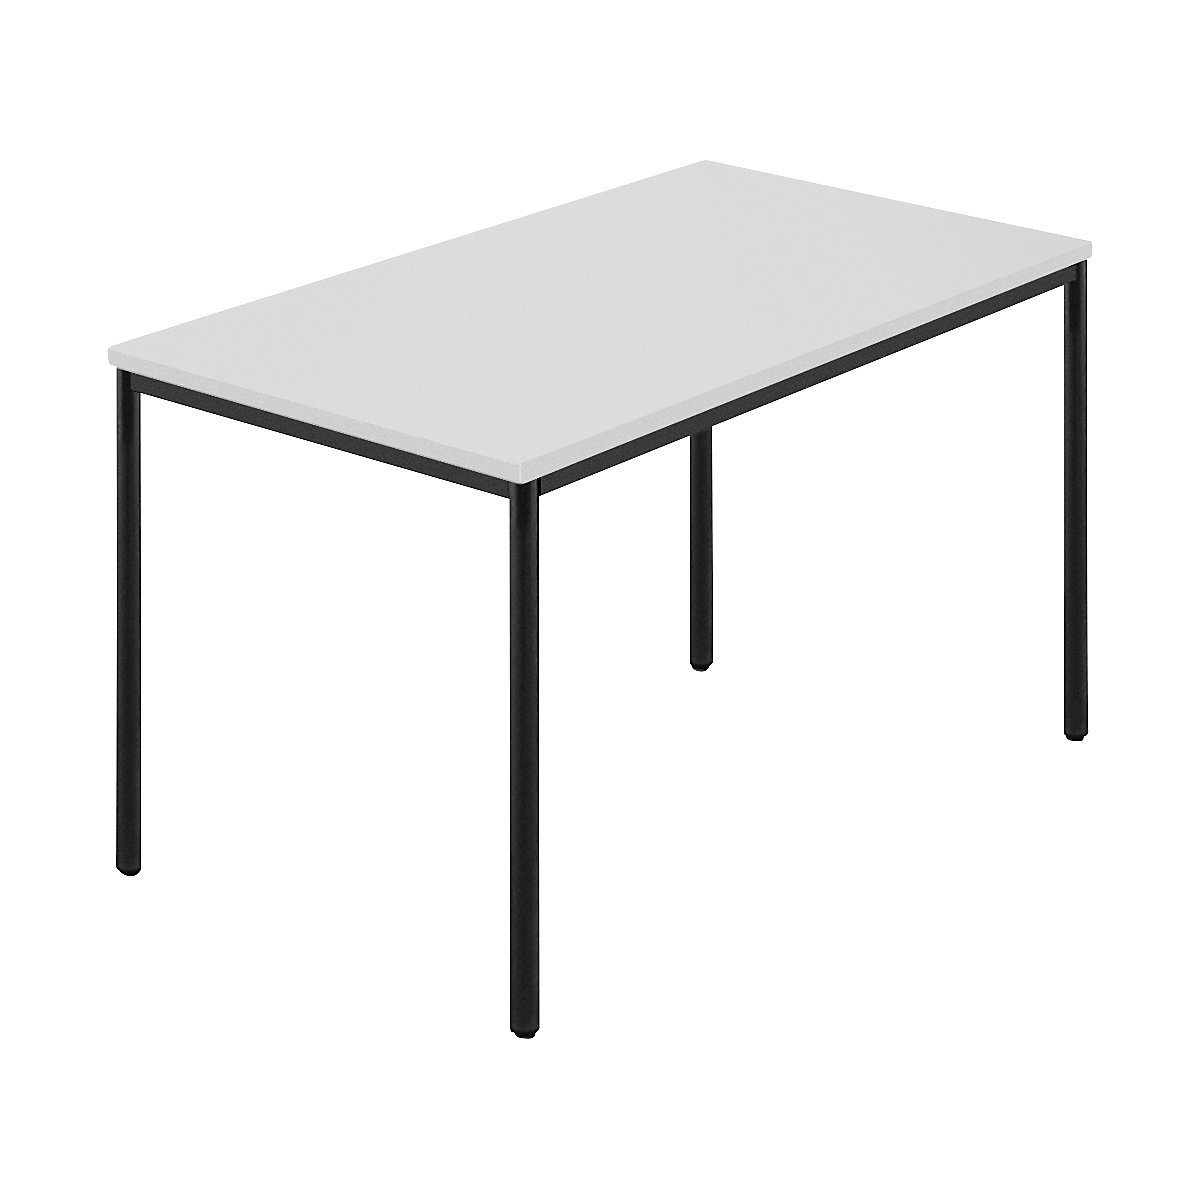 Rechthoekige tafel, ronde buis met coating, b x d = 1200 x 800 mm, grijs / antraciet-6